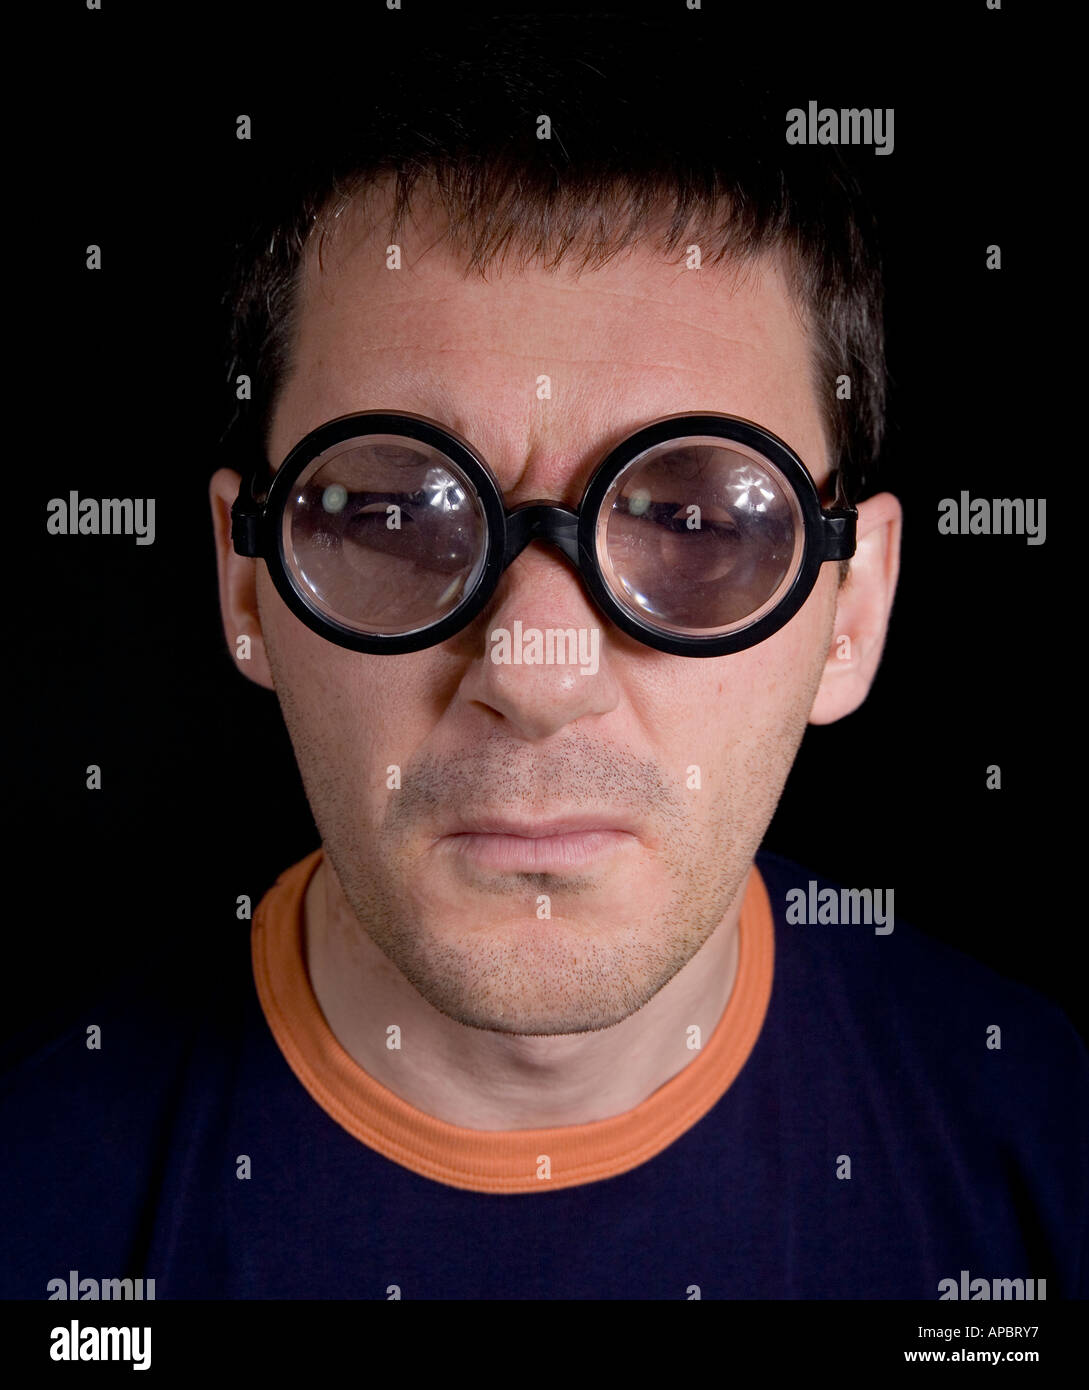 Occhiali spessi immagini e fotografie stock ad alta risoluzione - Alamy